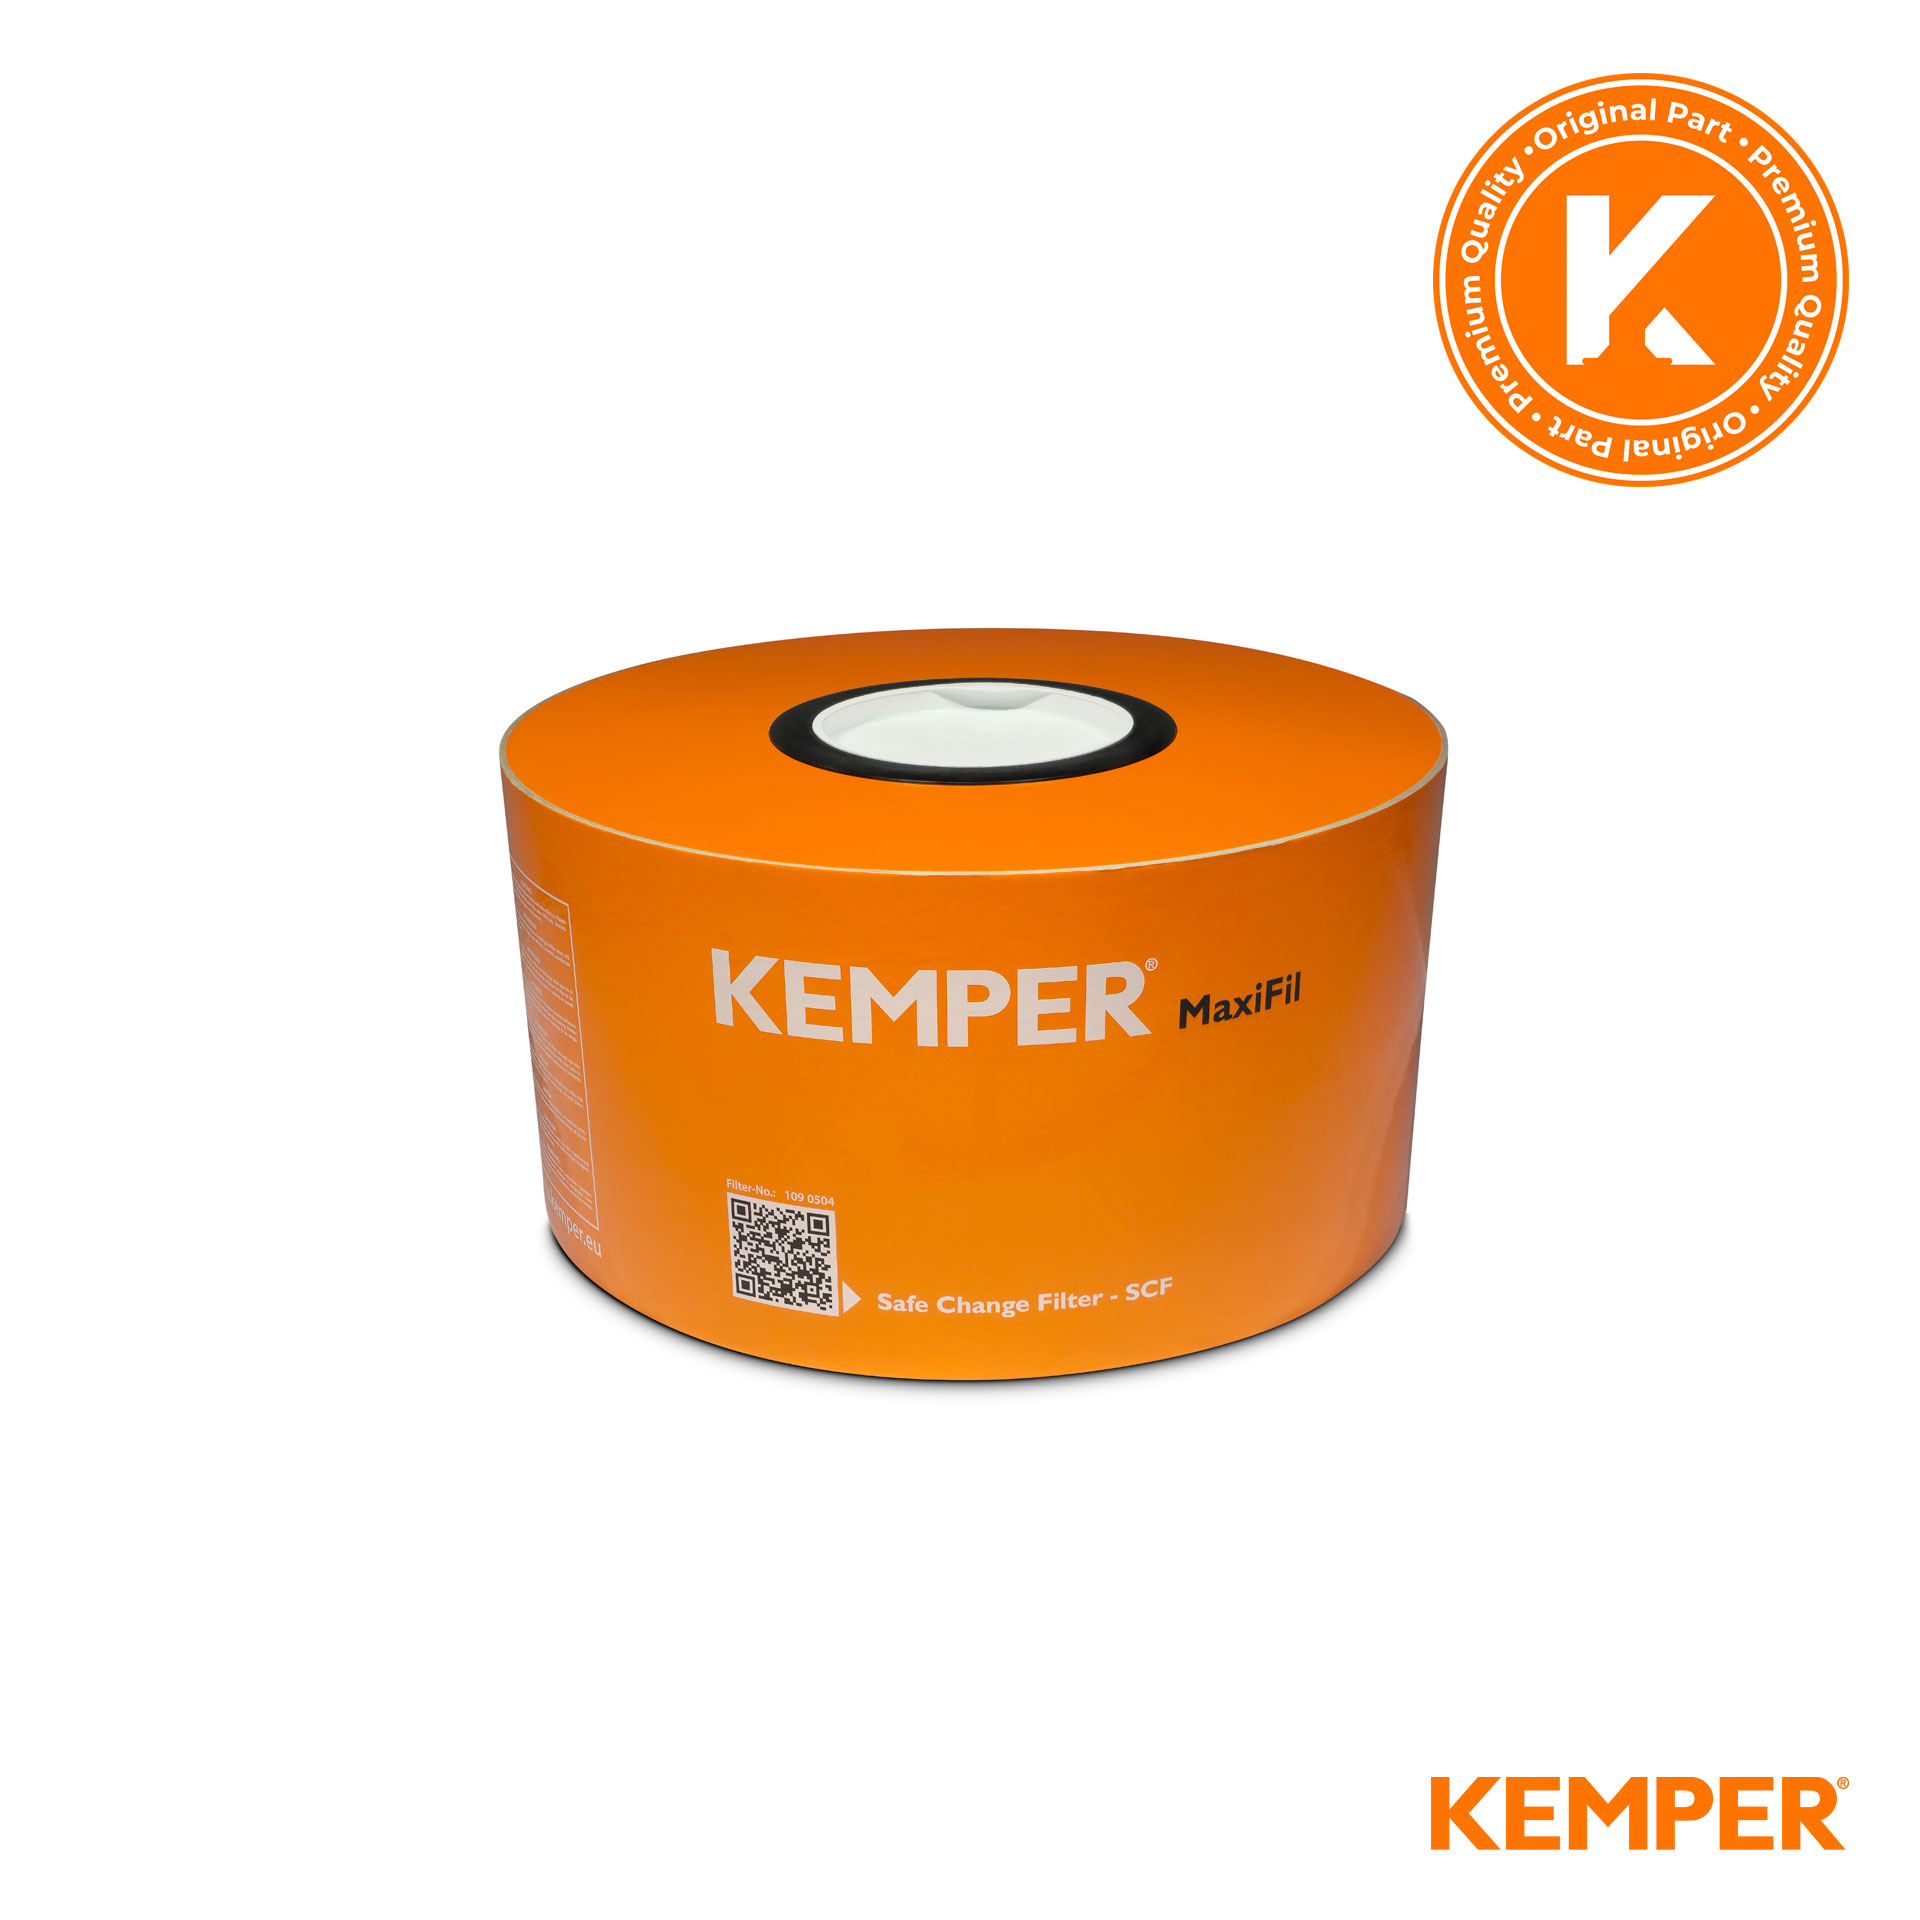 KEMPER MaxiFil Filterteil mit Vorfilter - E12 - 34 m²